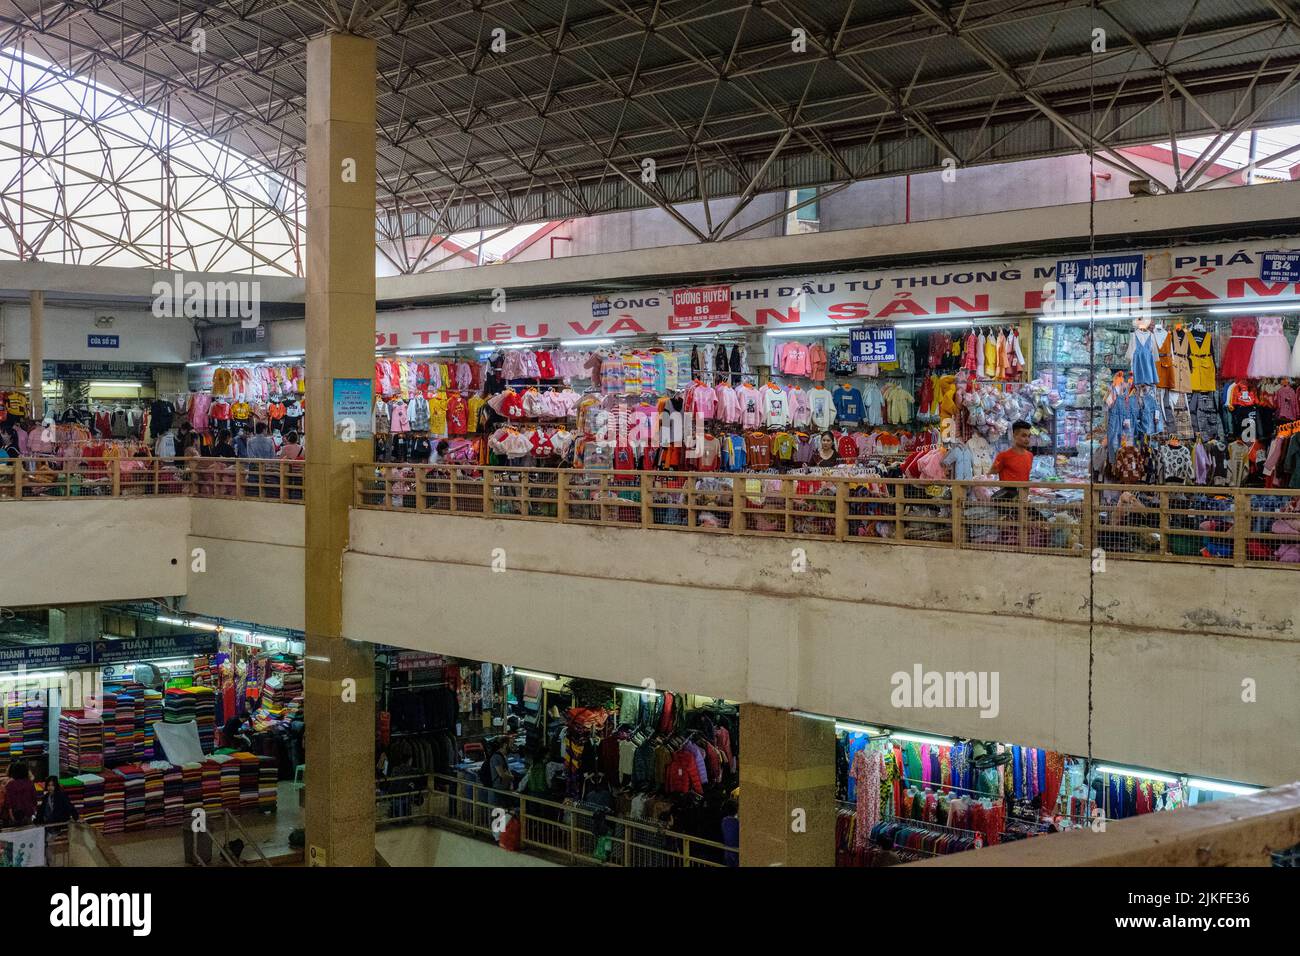 HANOI, VIETNAM - JANUARY 5, 2020: Impressions from inside Dong Xuan market in Hanoi, Vietnam on January 5, 2020. Stock Photo